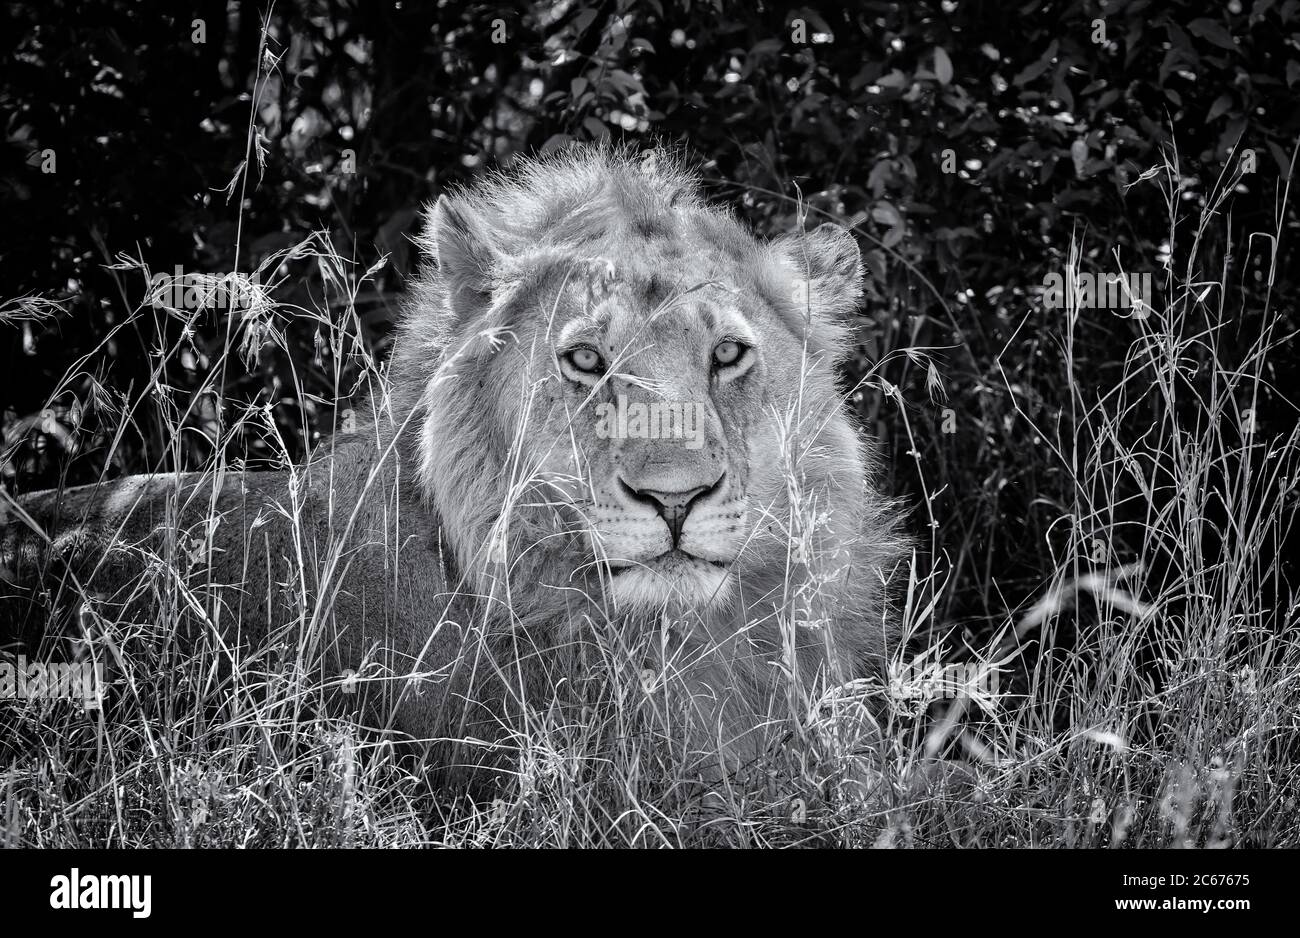 Lion africain de sexe masculin gros plan portrait du visage regardant vers l'avant, reposant derrière l'herbe haute dans la réserve nationale de Masai Mara, Kenya, Afrique. Noir et blanc Banque D'Images